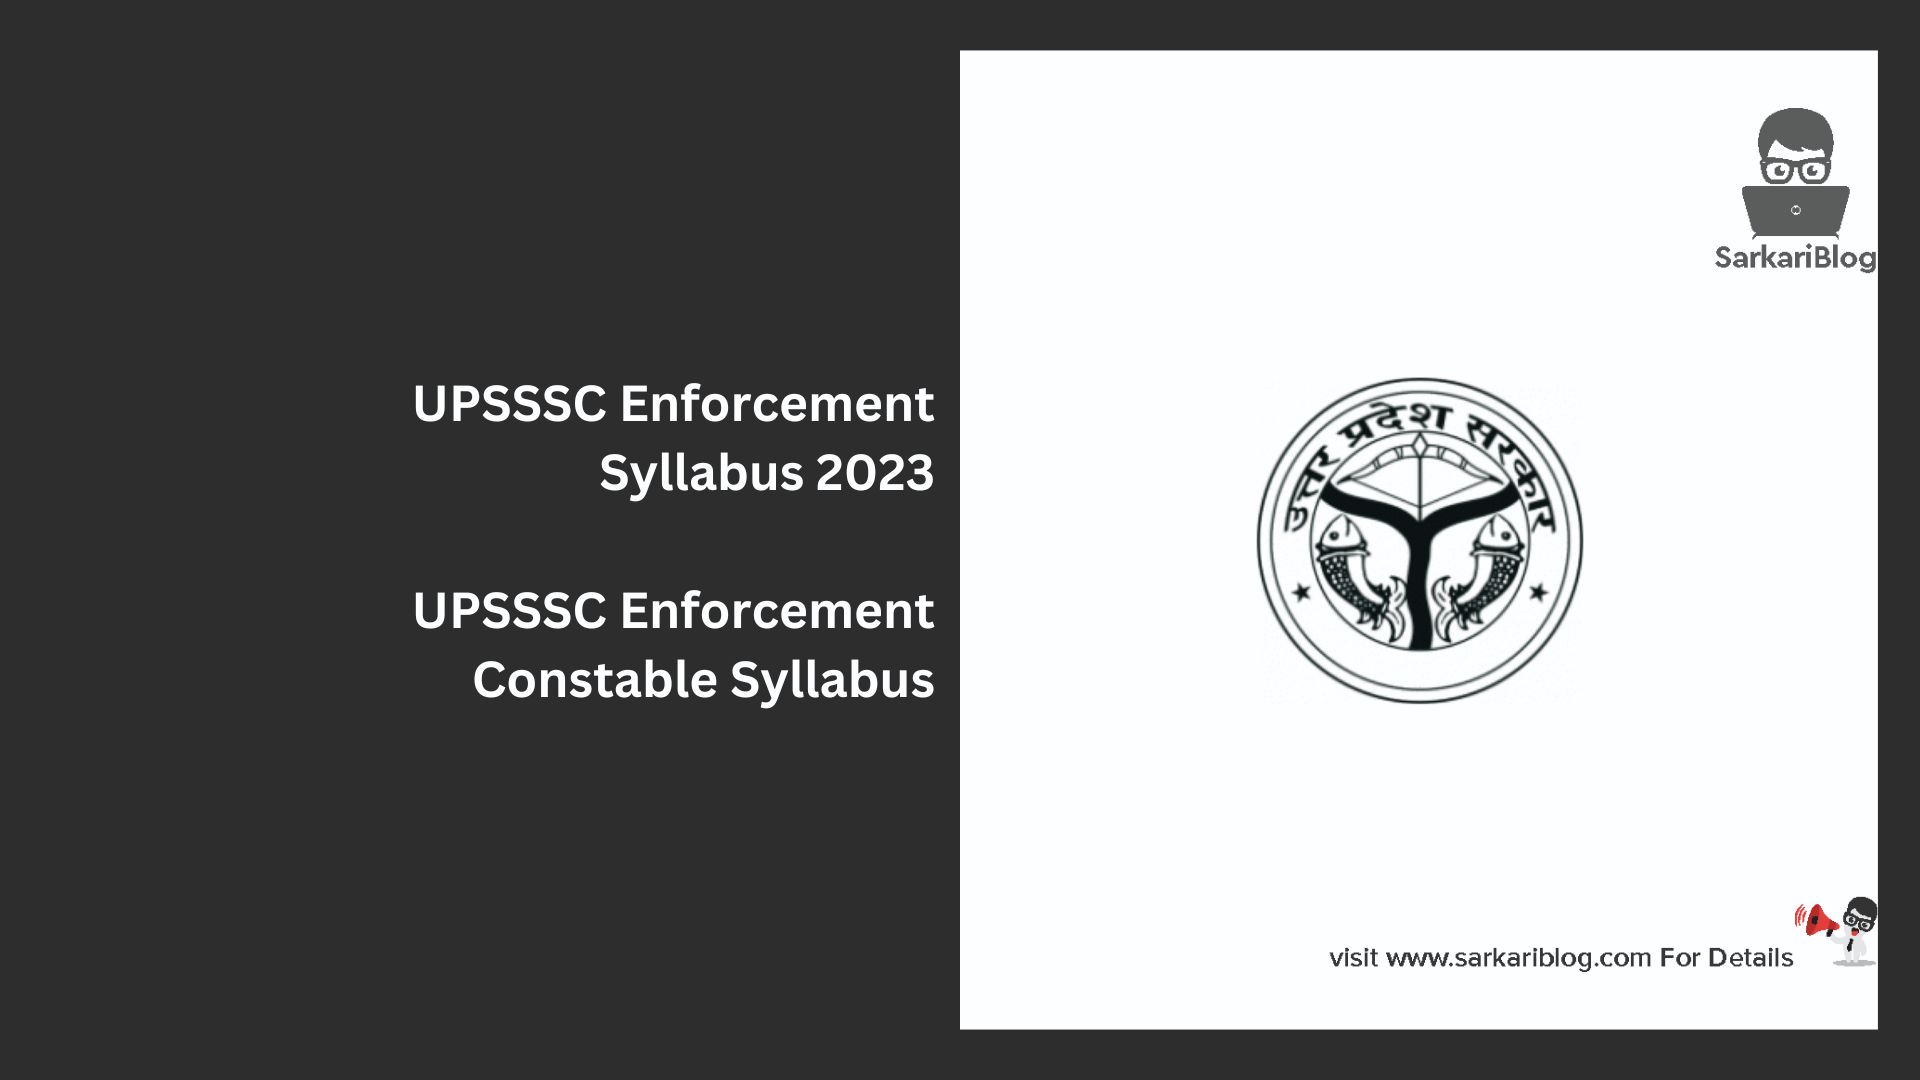 UPSSSC Enforcement Syllabus 2023